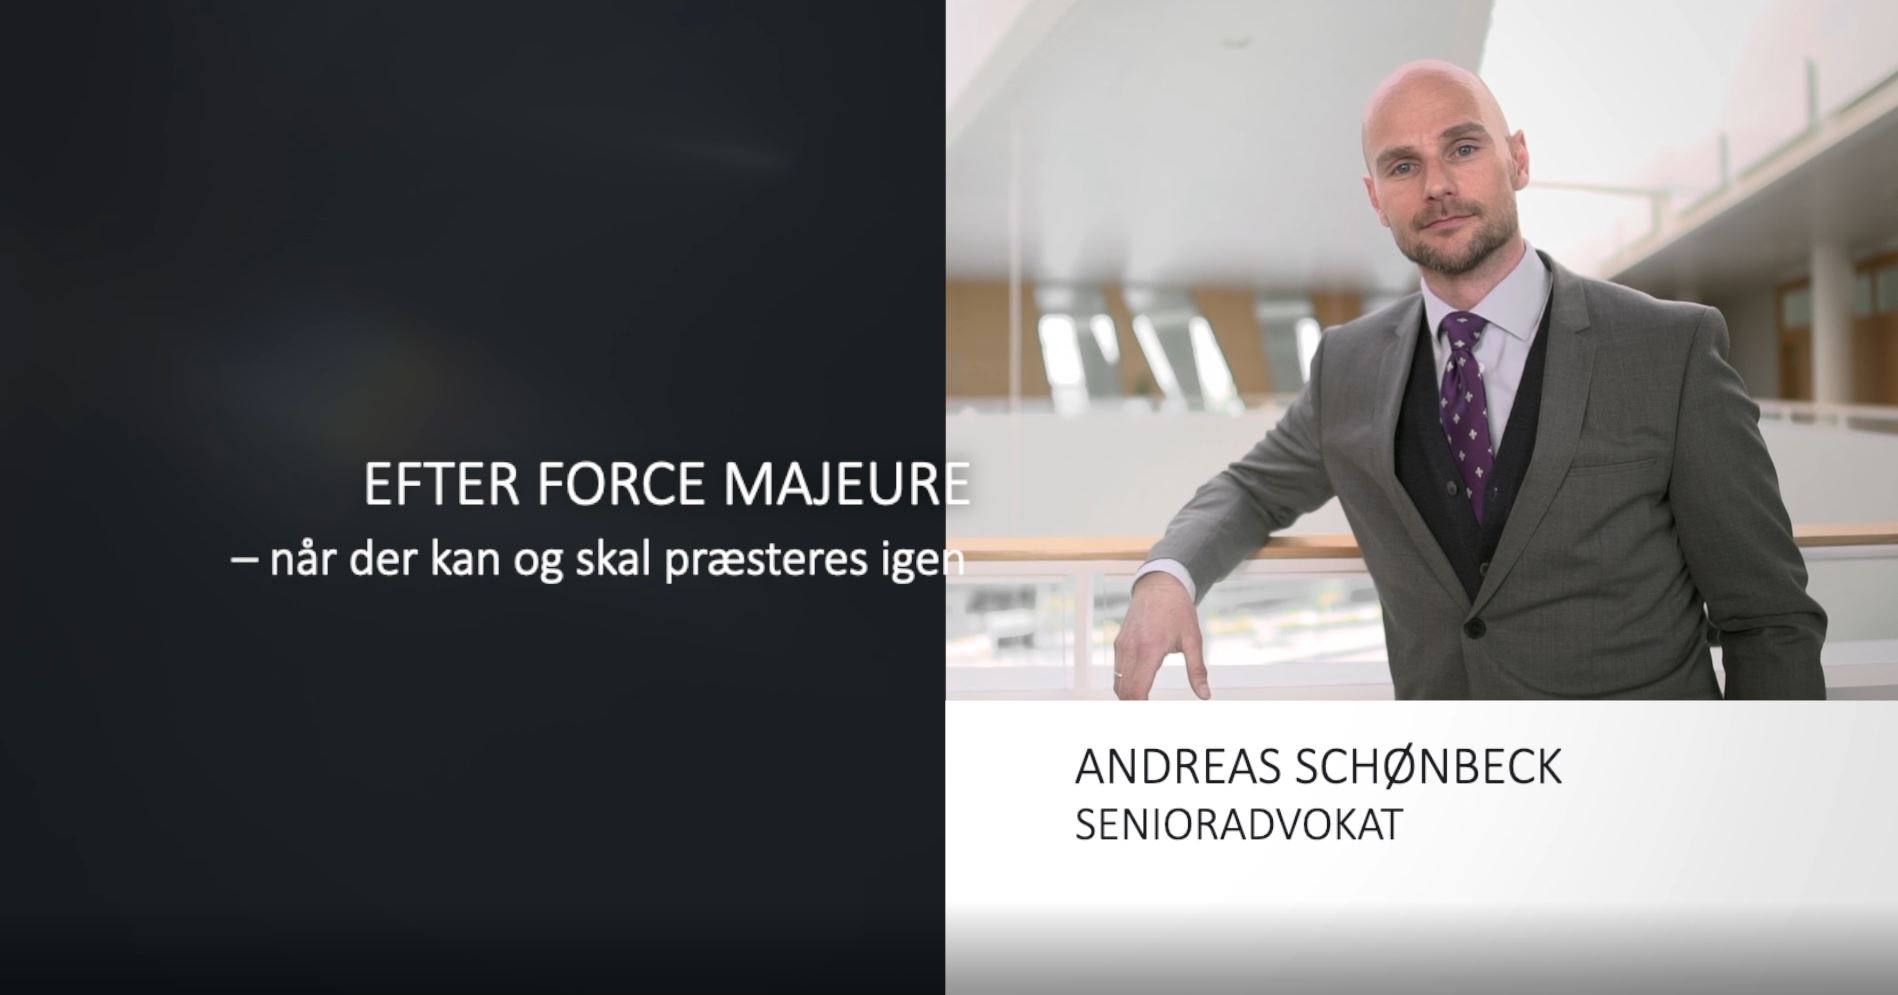 Efter force majeure - når der kan og skal præsteres igen - video med senioradvokat Andreas Schønbeck